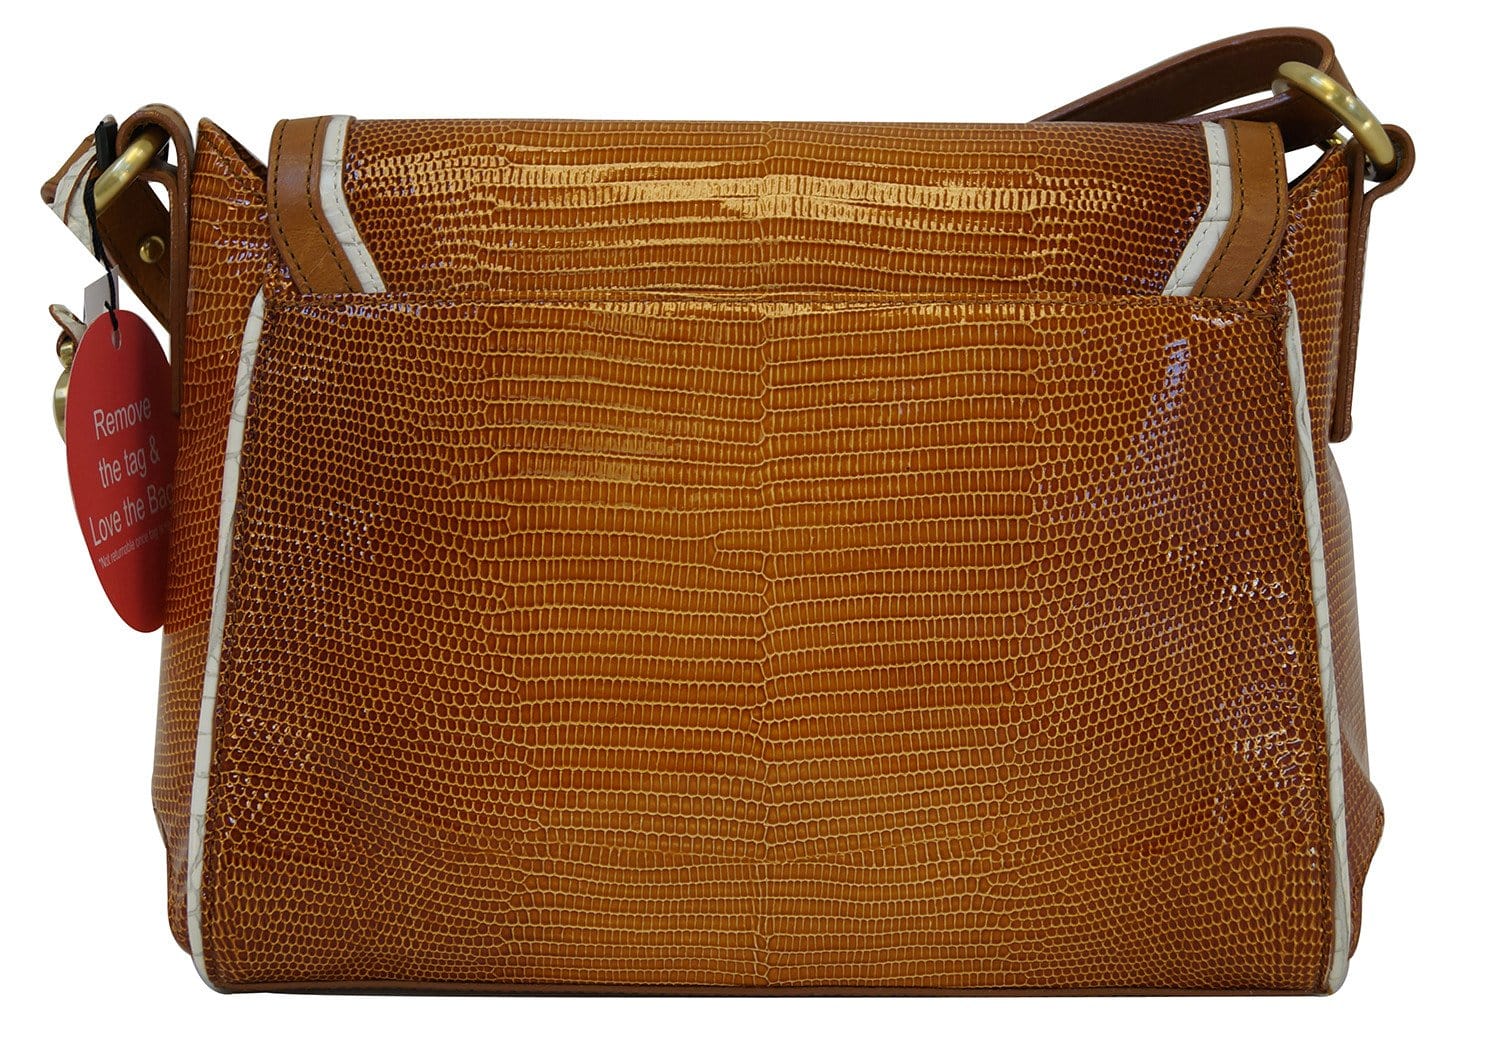 BRAHMIN Brand Shoulder or Hand Bag